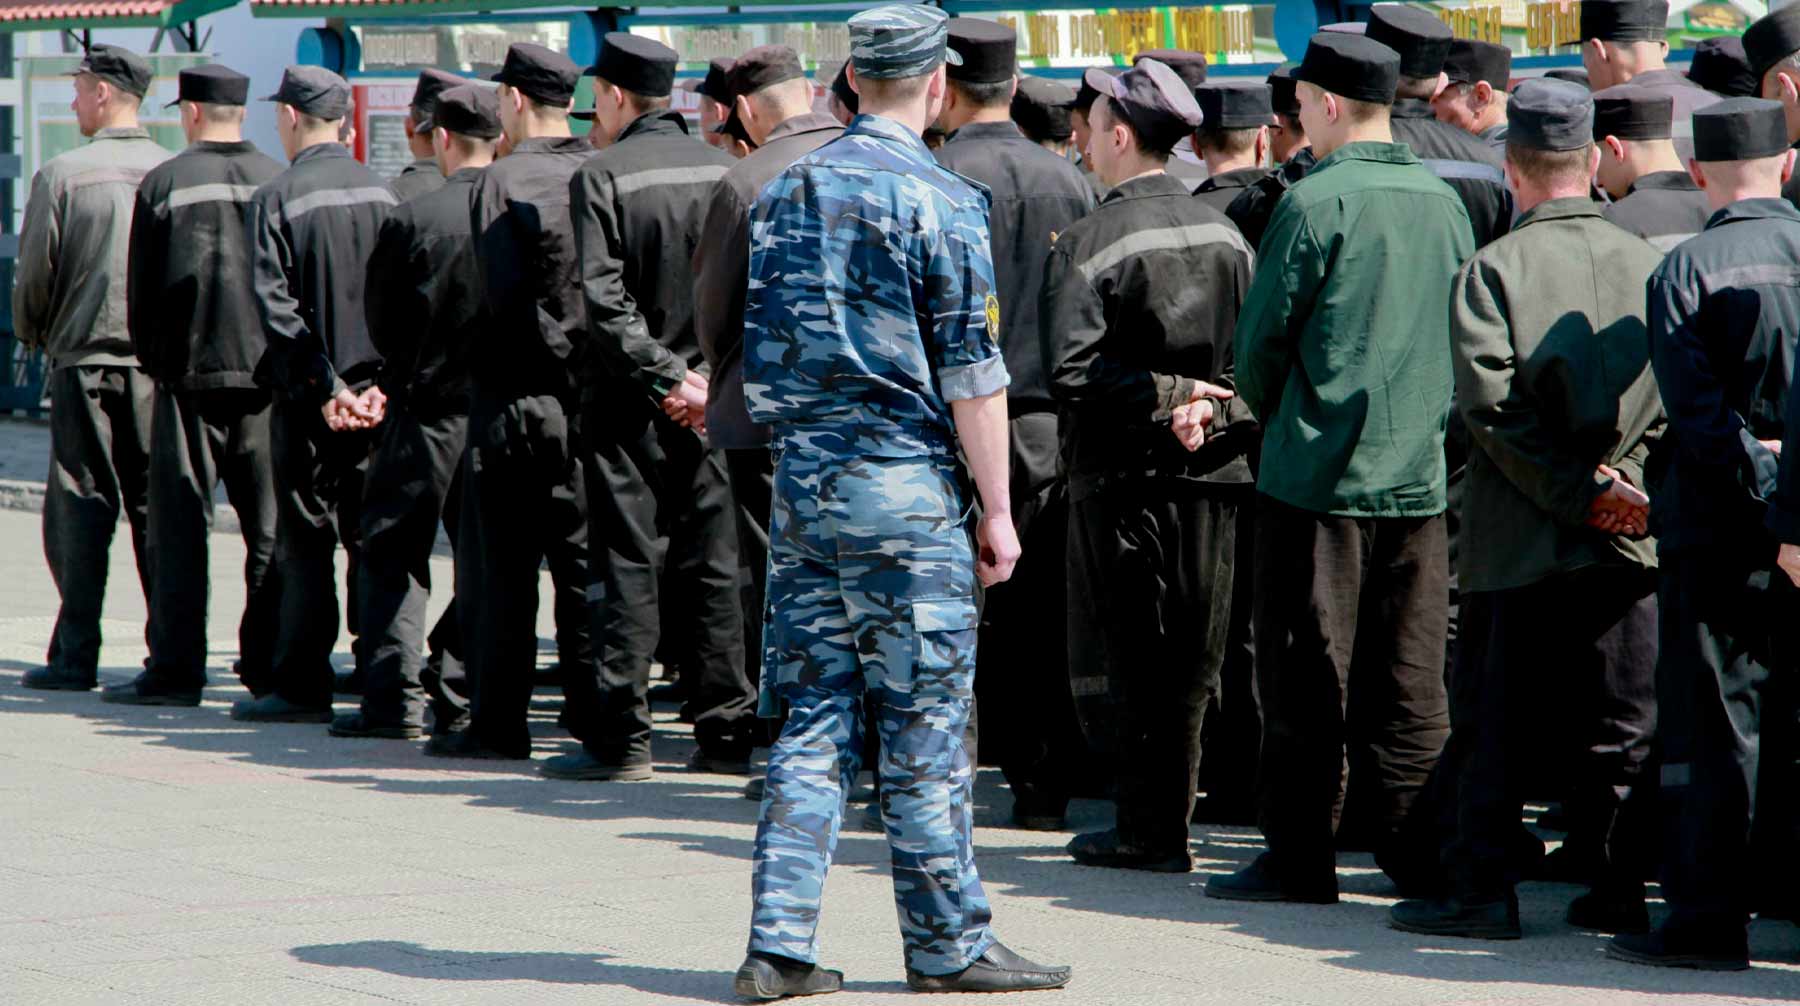 Сторона потерпевших намерена обжаловать приговор и добиваться реального тюремного срока для двух фигурантов уголовного дела Фото: © Global Look Press / Pravda Komsomolskaya